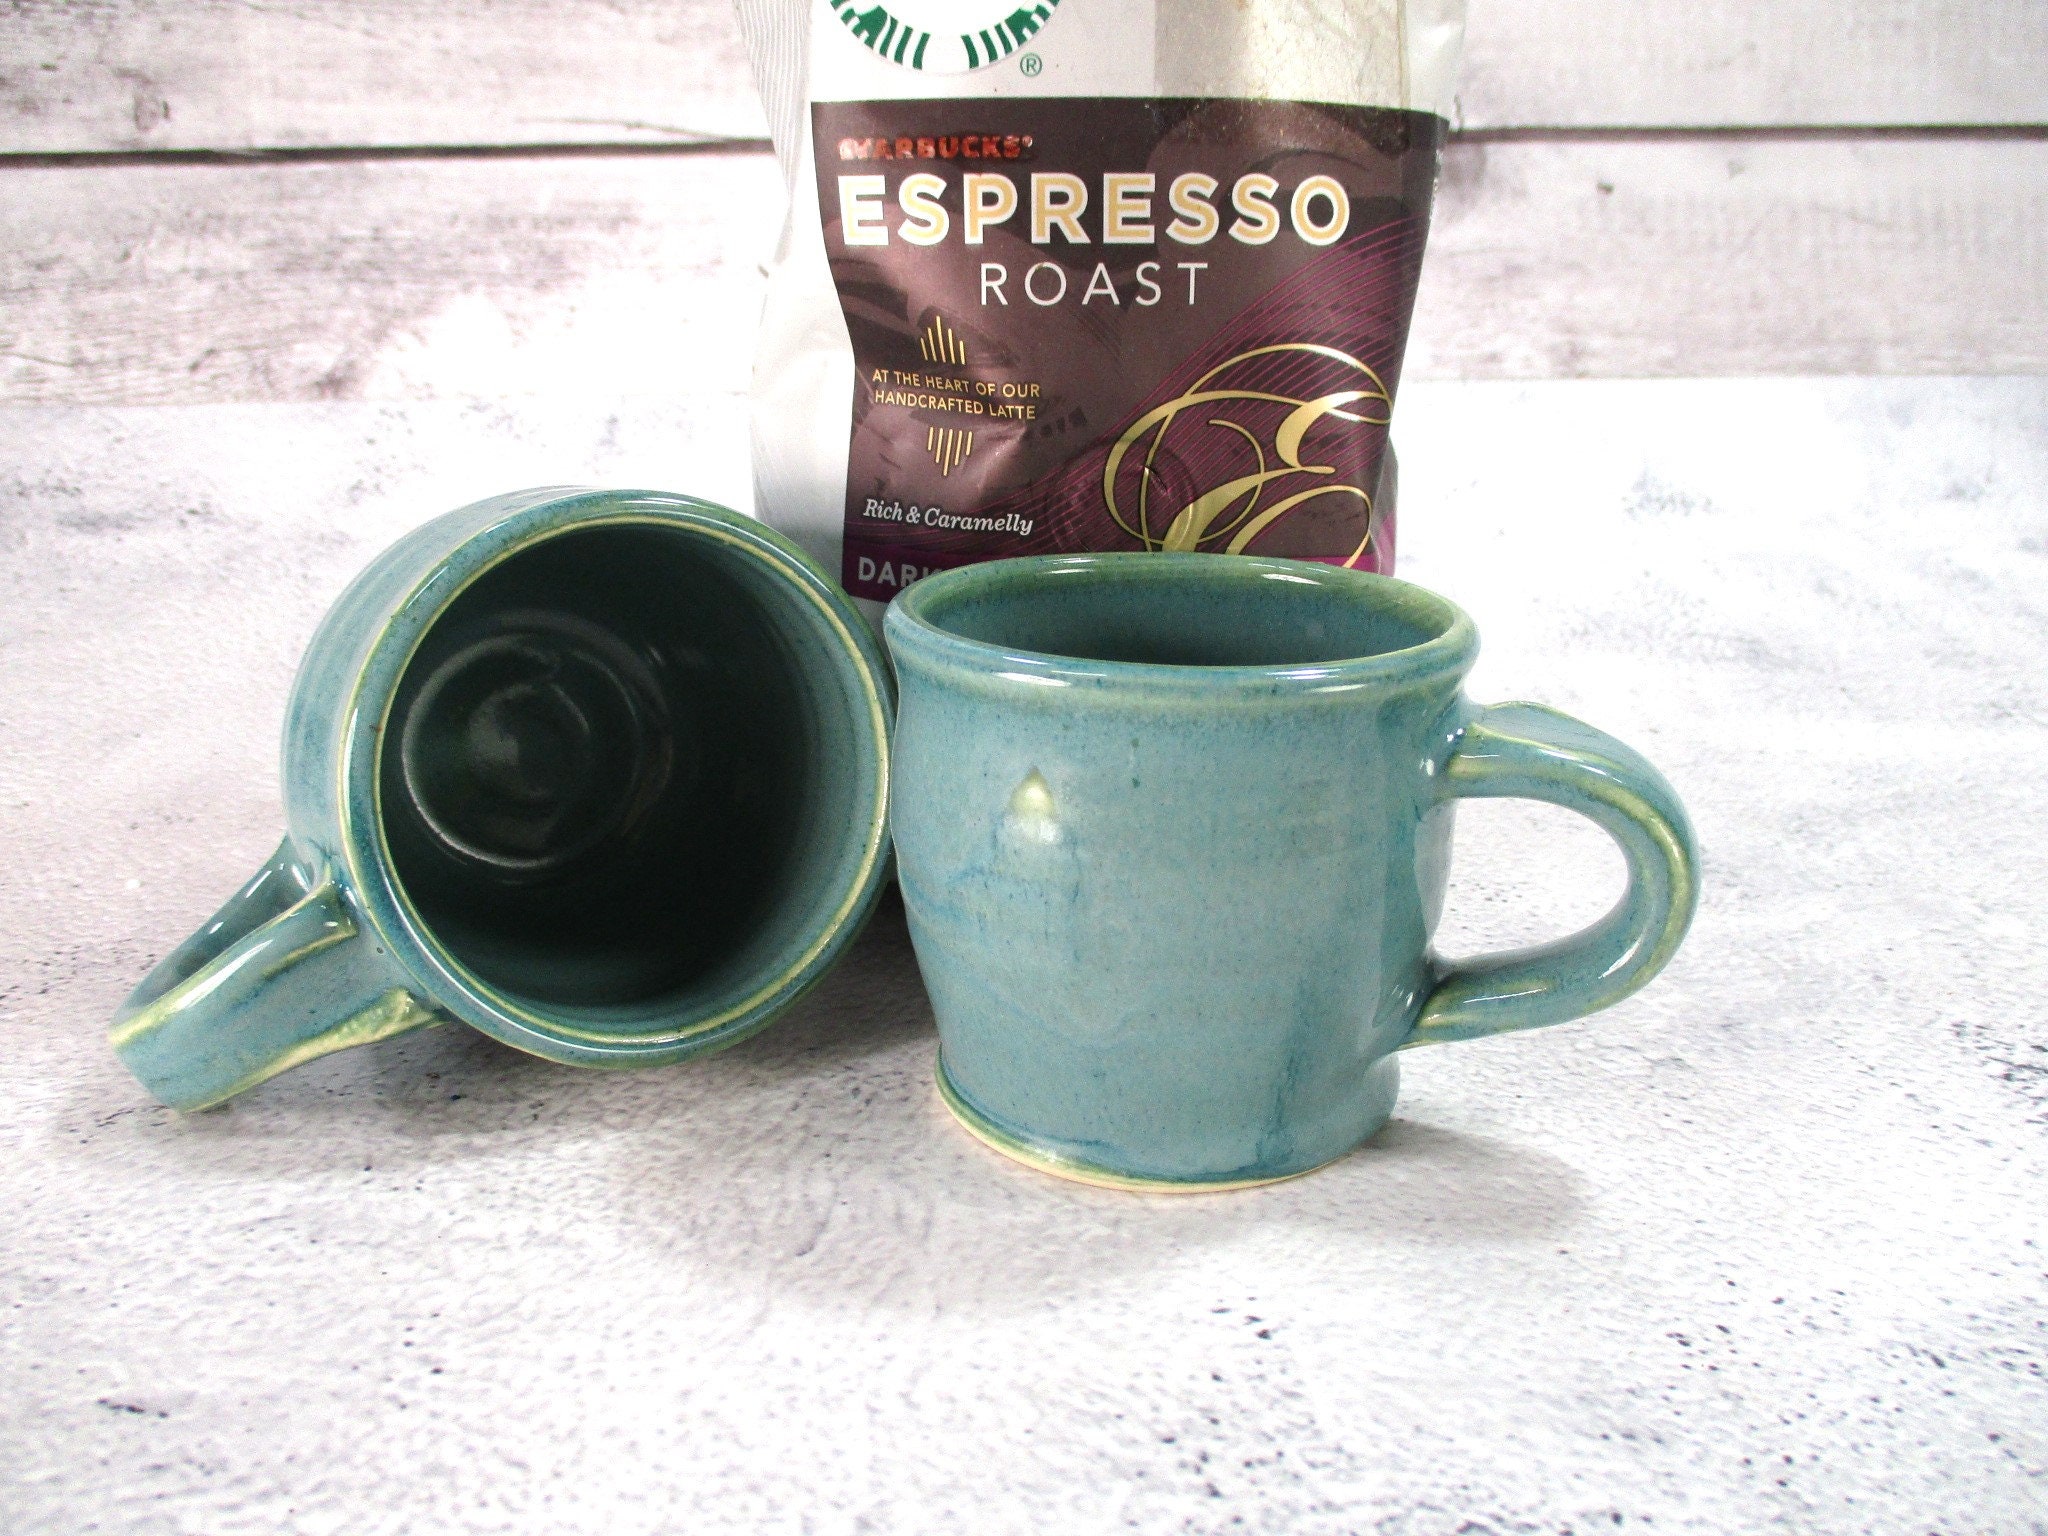  Patelai Espresso Cup, 5 Ounces Mini Coffee Mug Set